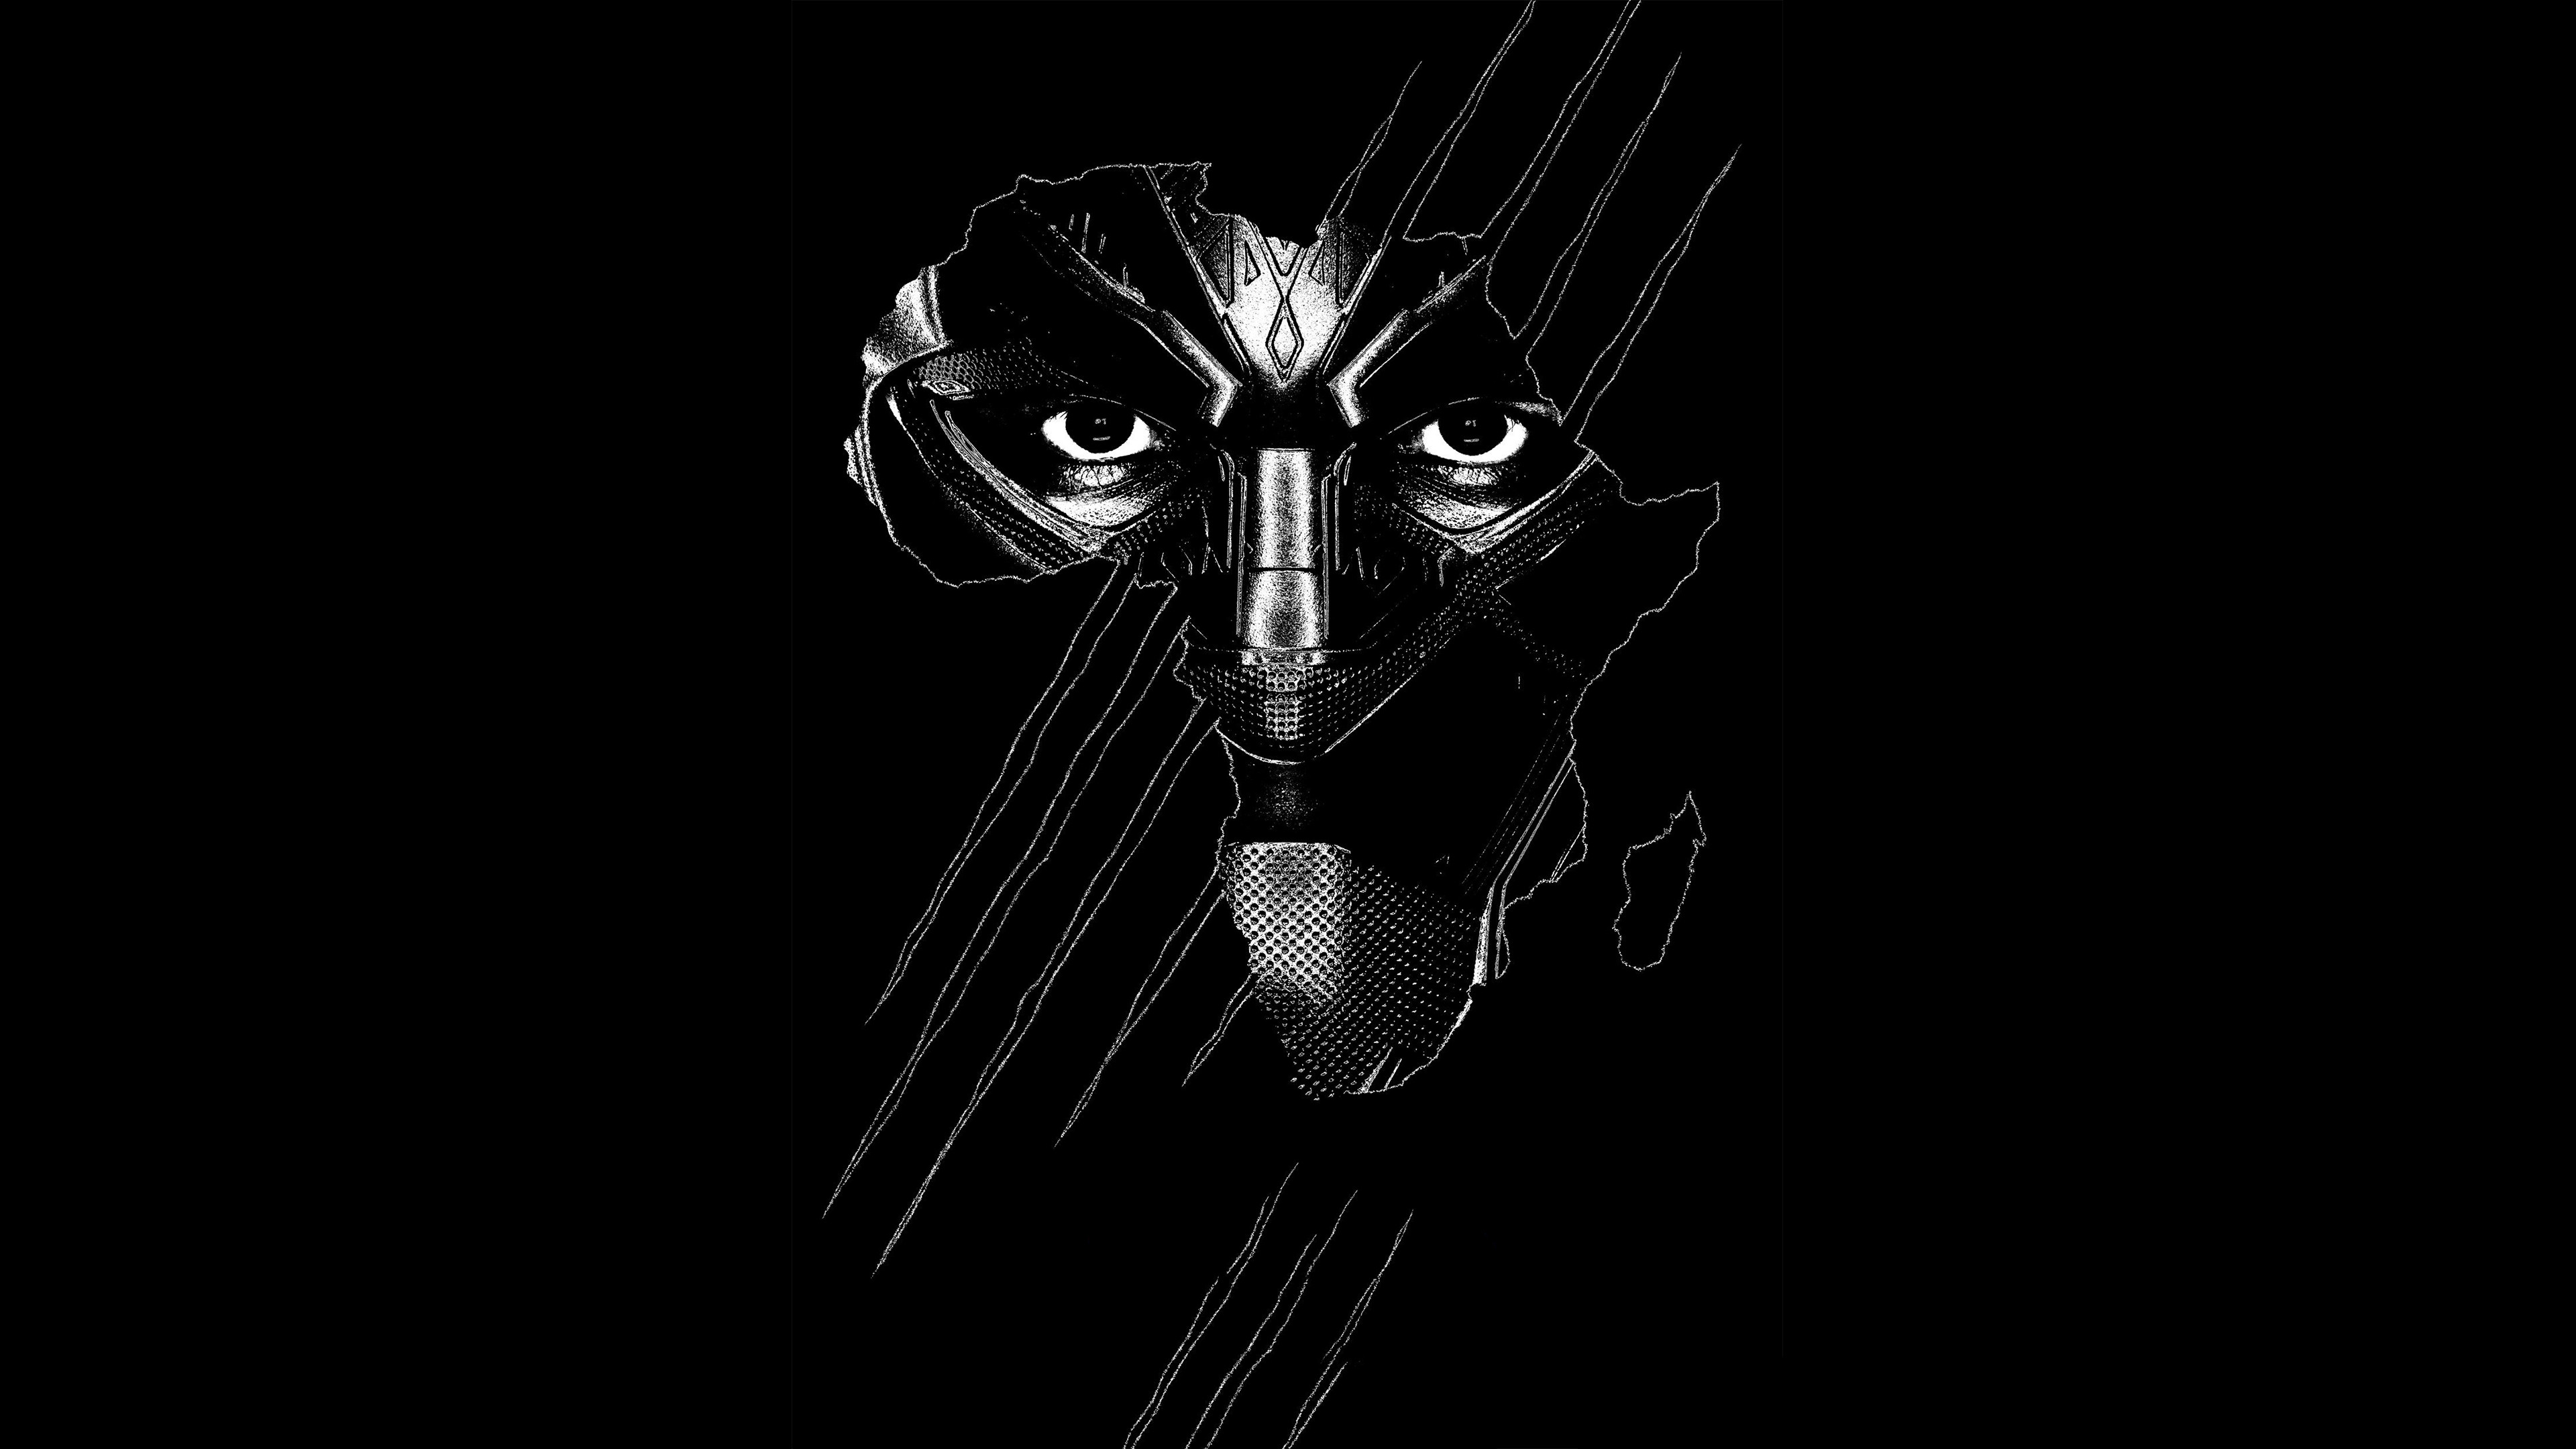 Bạn là fan của Black Panther? Vậy thì đừng bỏ lỡ các hình nền Black Panther đầy sức mạnh và đẹp mắt này! Bạn có thể tận hưởng những hình ảnh hoành tráng của siêu anh hùng đầy cảm hứng từ màn ảnh lớn trên màn hình của mình.